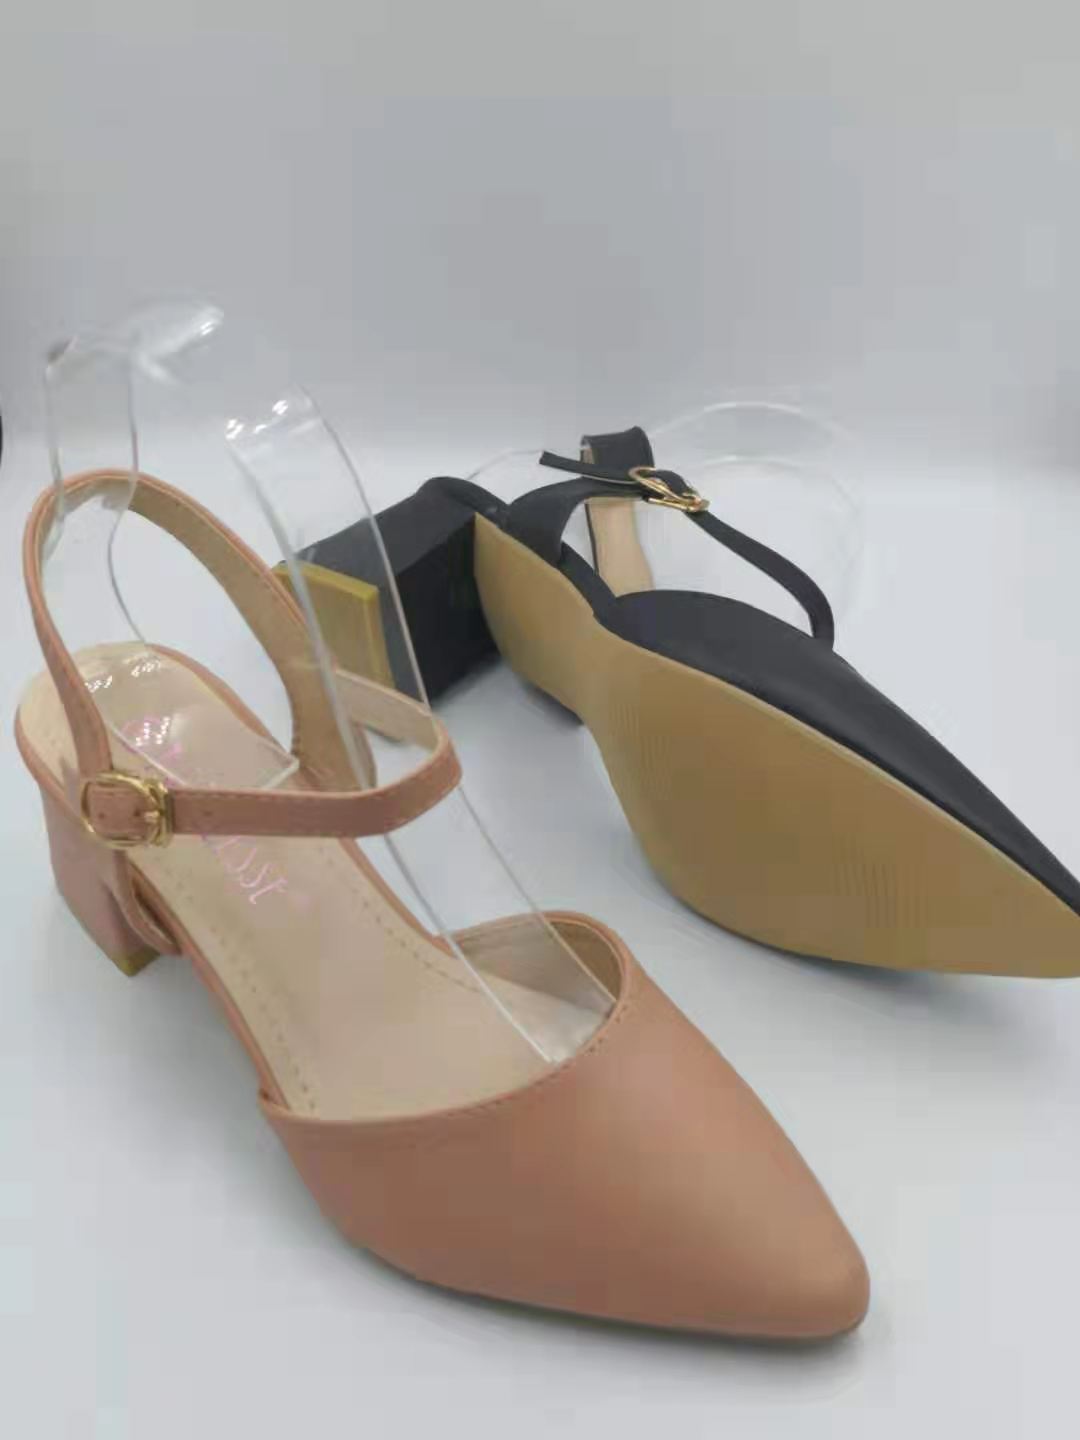 2.5 inch block heels